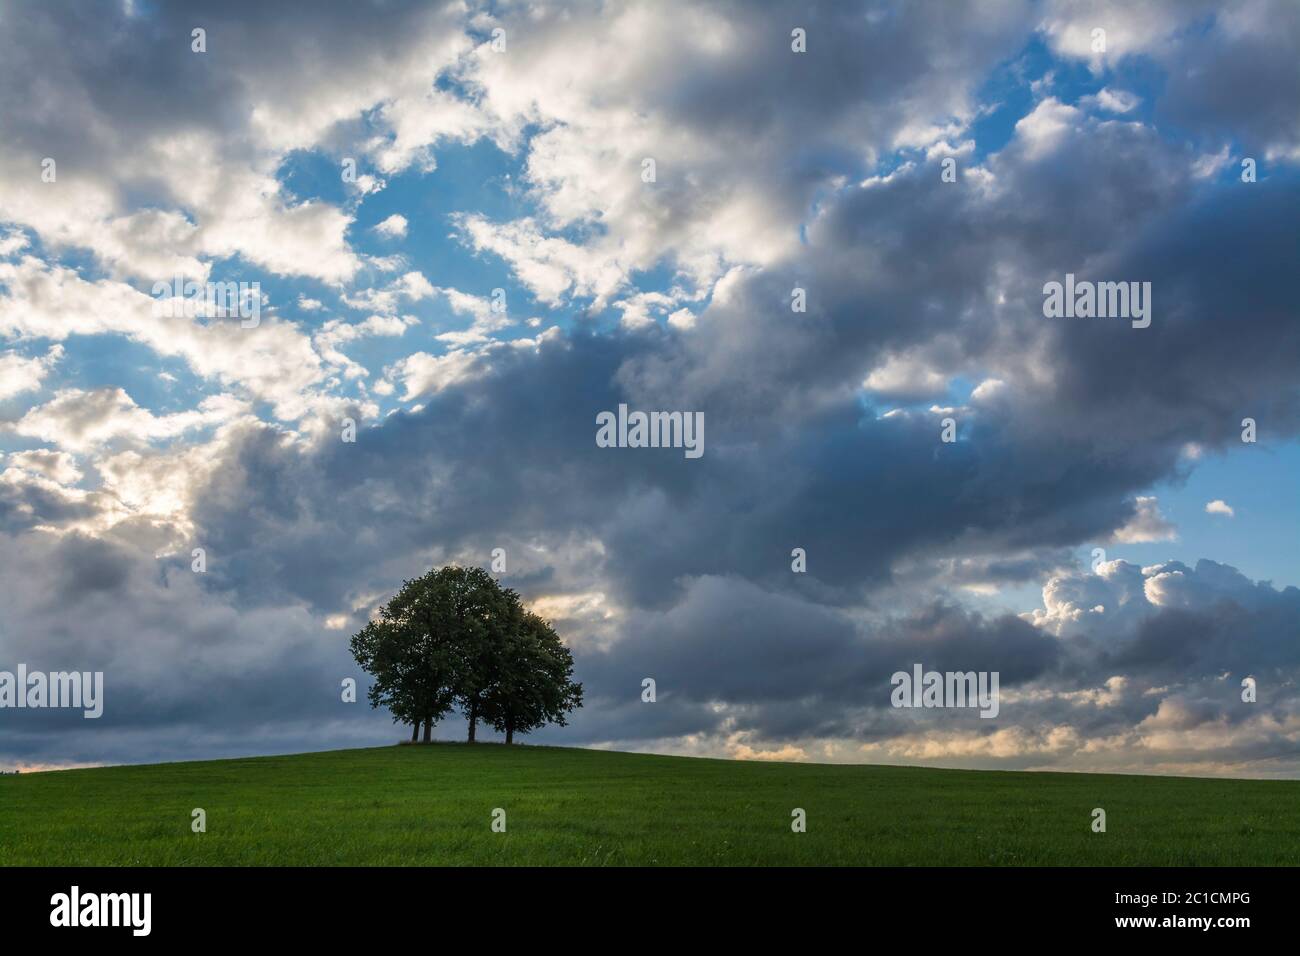 Oaks in striking weather on a meadow Stock Photo